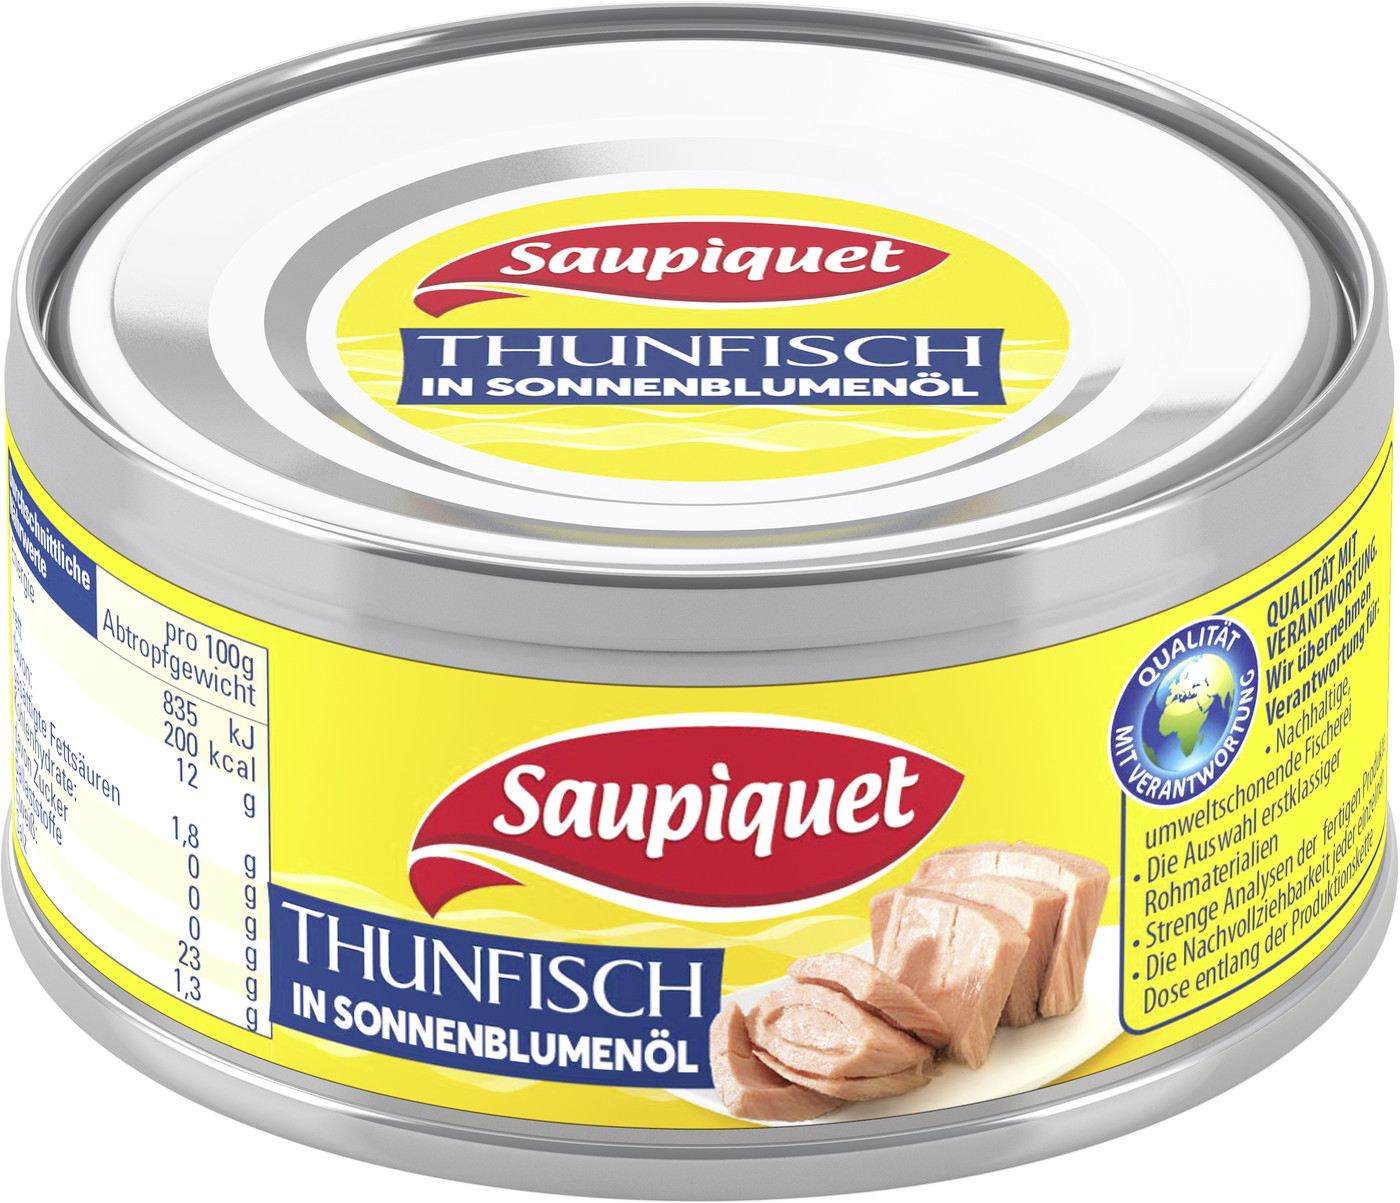 Saupiquet Thunfisch in Sonnenblumenöl 185G